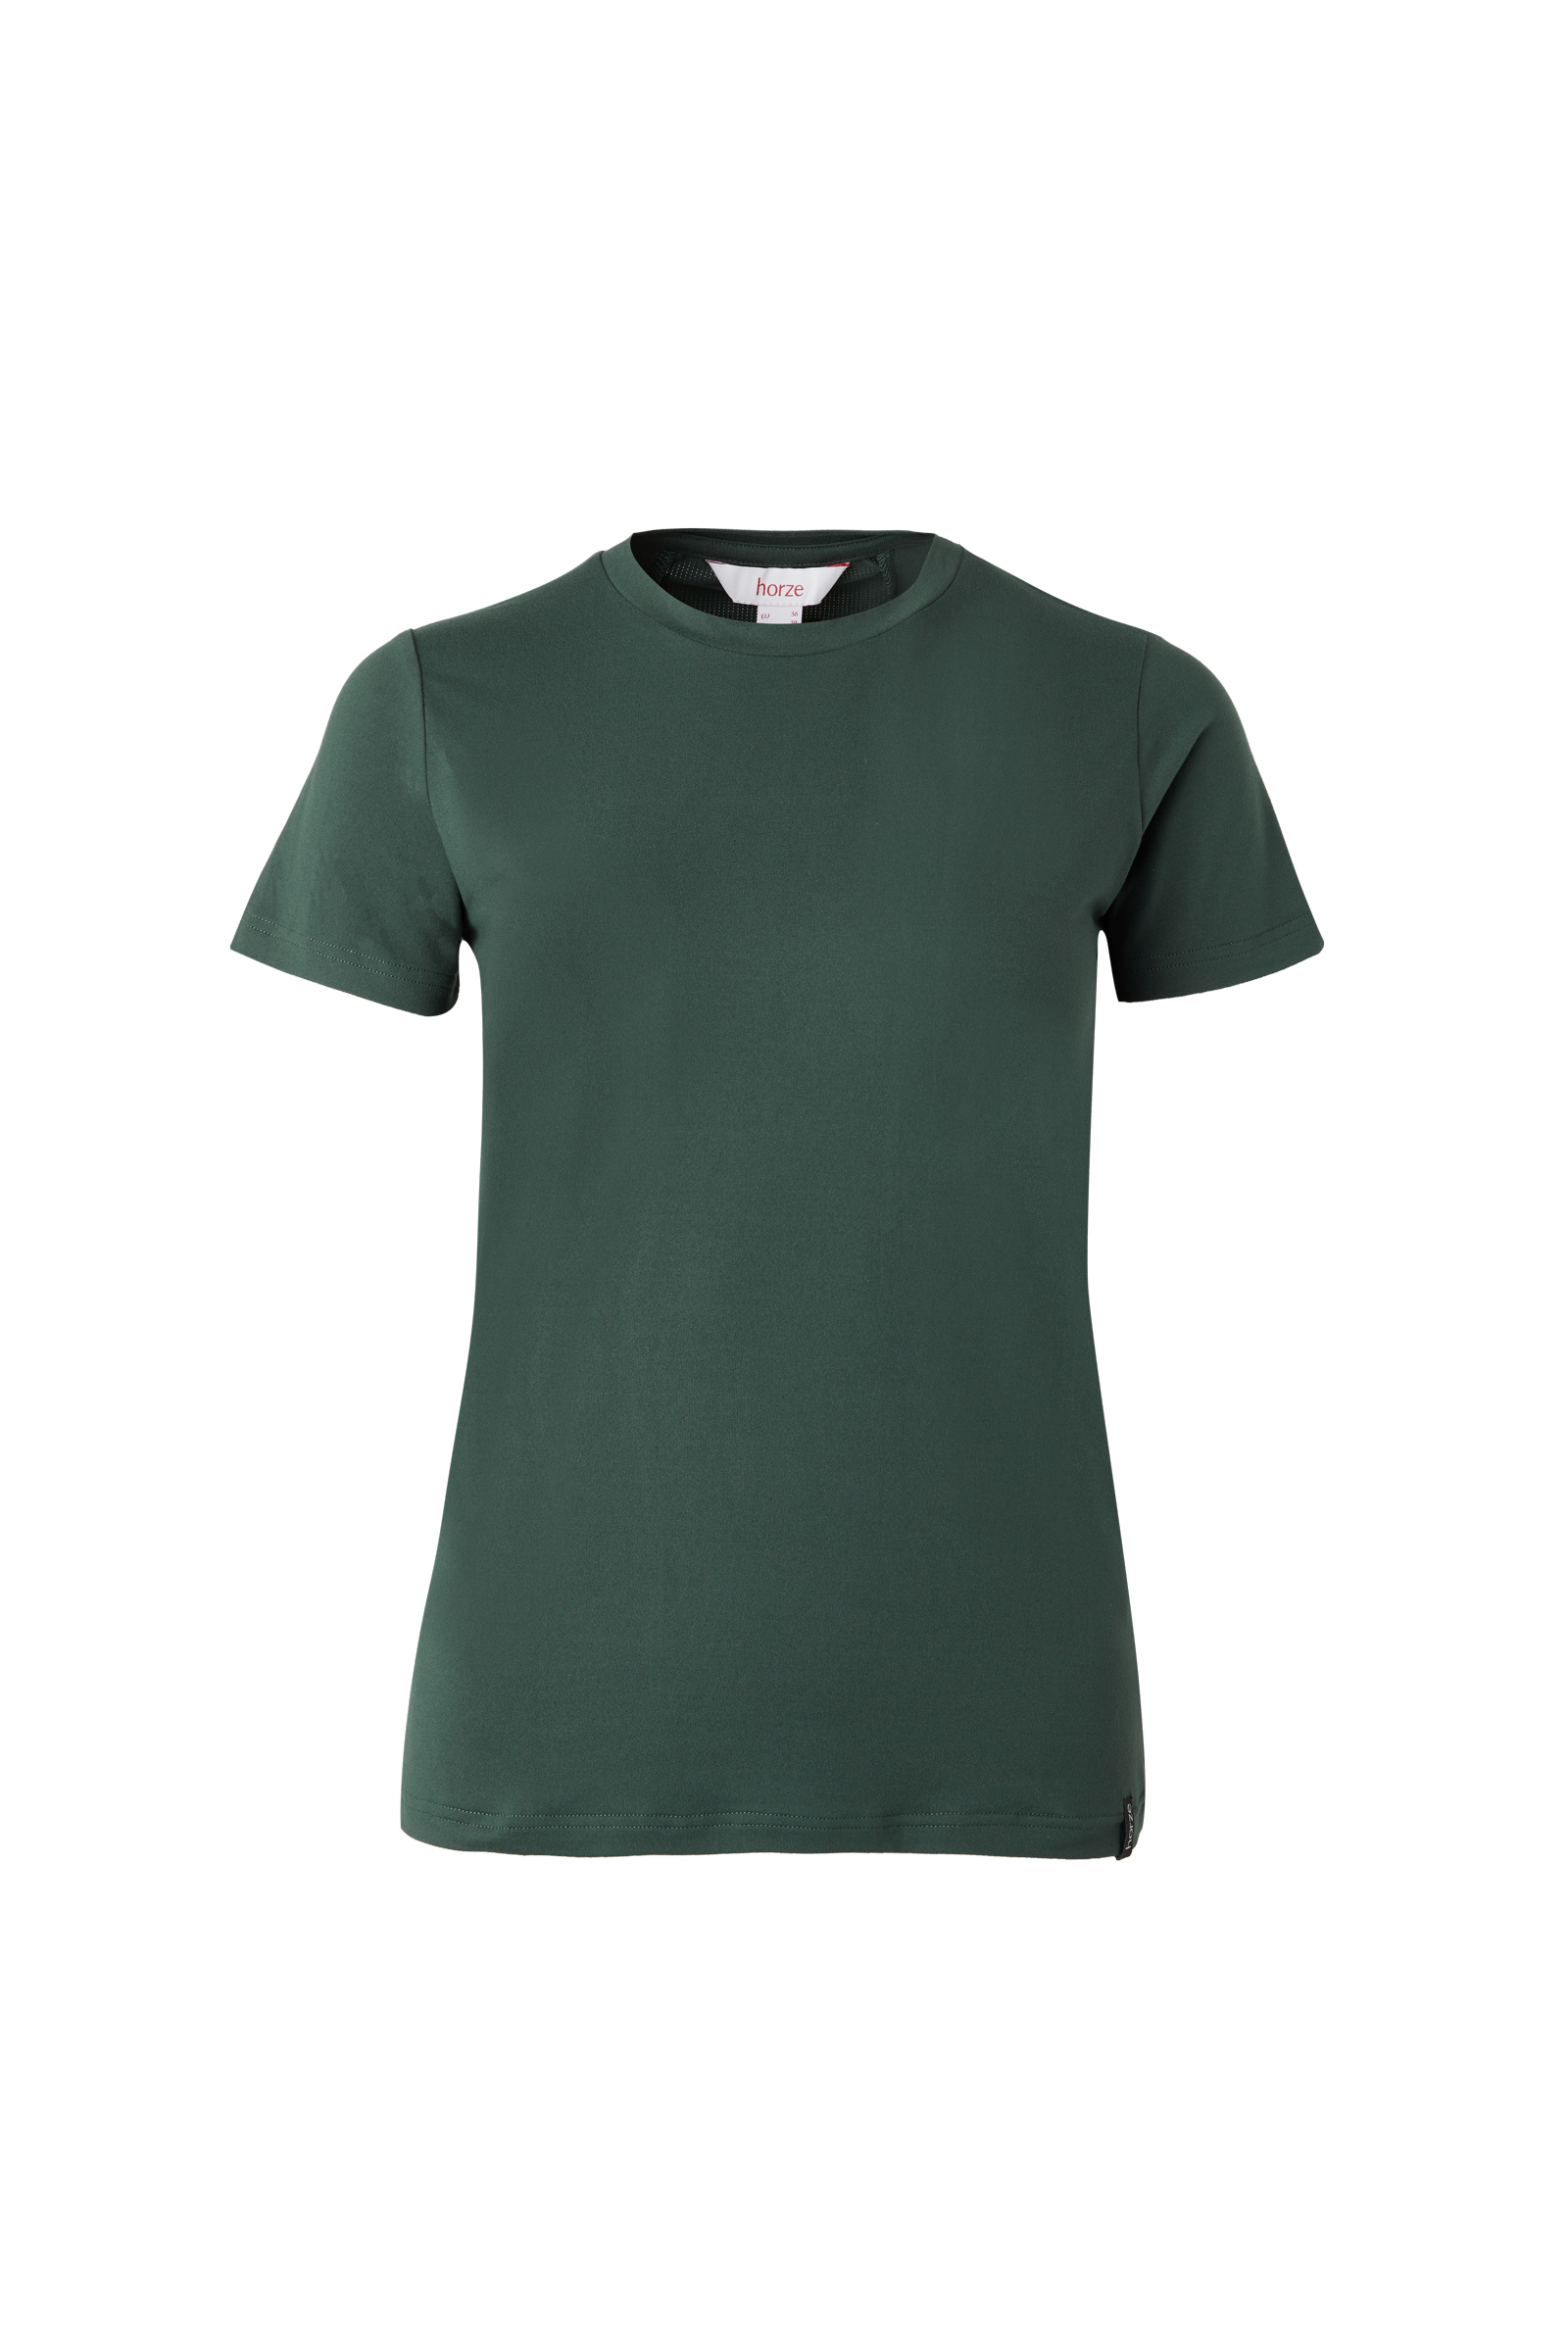 plain green t shirt women's